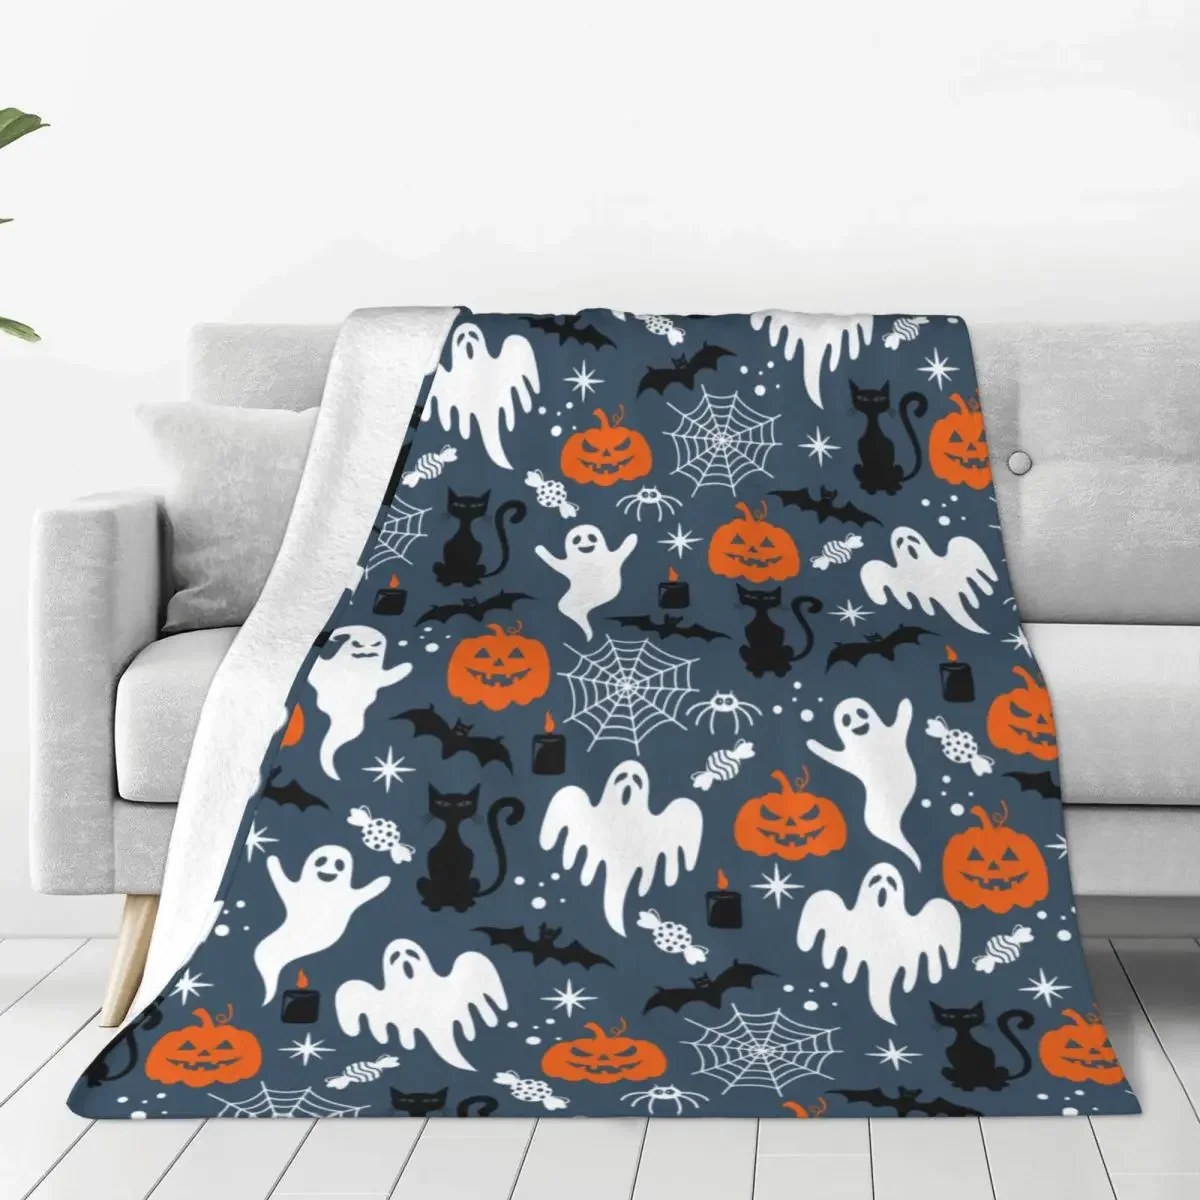 

Многофункциональное ультрамягкое покрывало с рисунком летучей мыши и кошек на Хэллоуин для дома и офиса